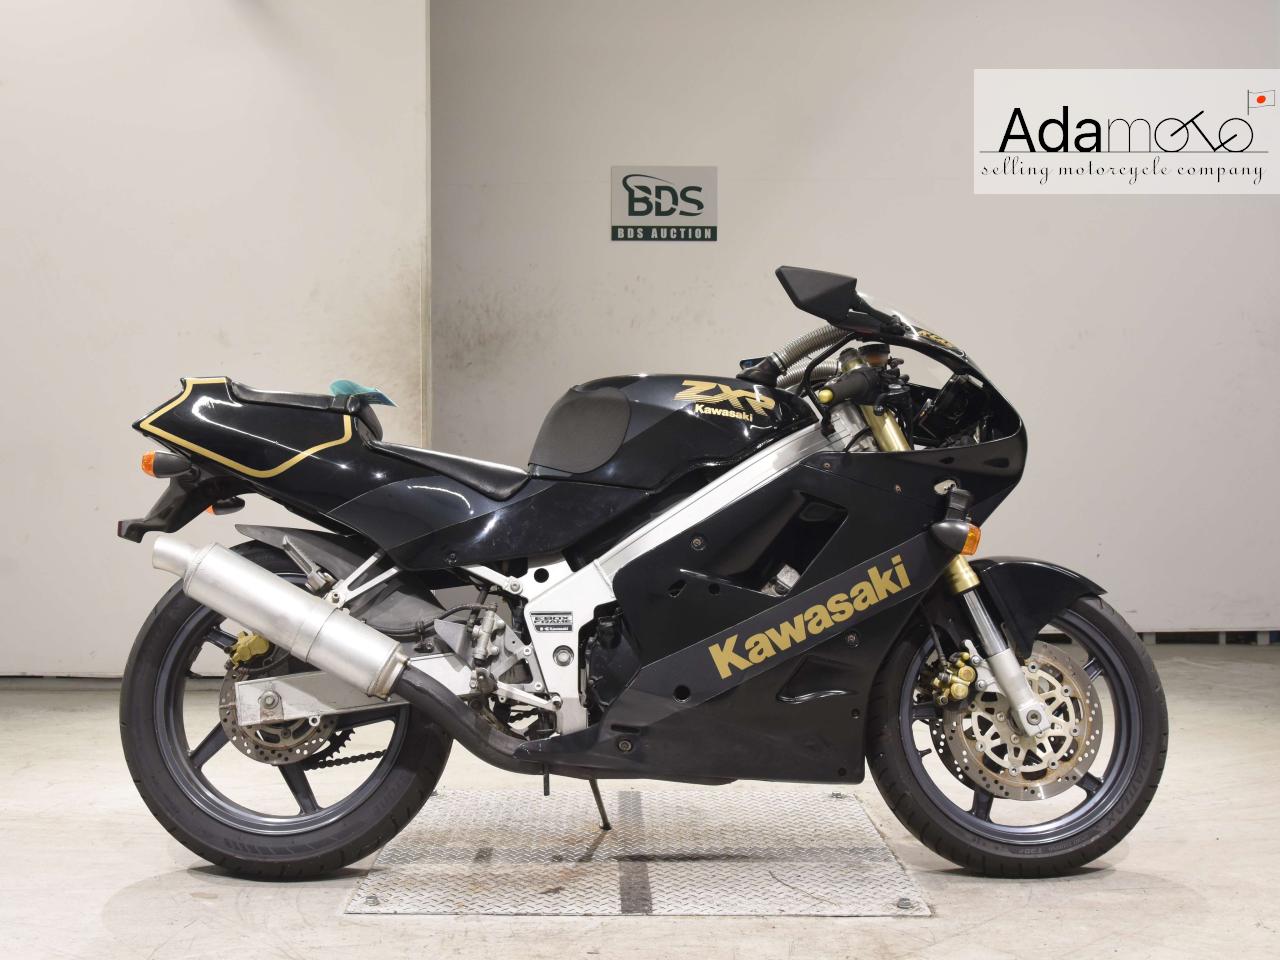 Kawasaki ZXR250 1 - Adamoto - Motorcycles from Japan